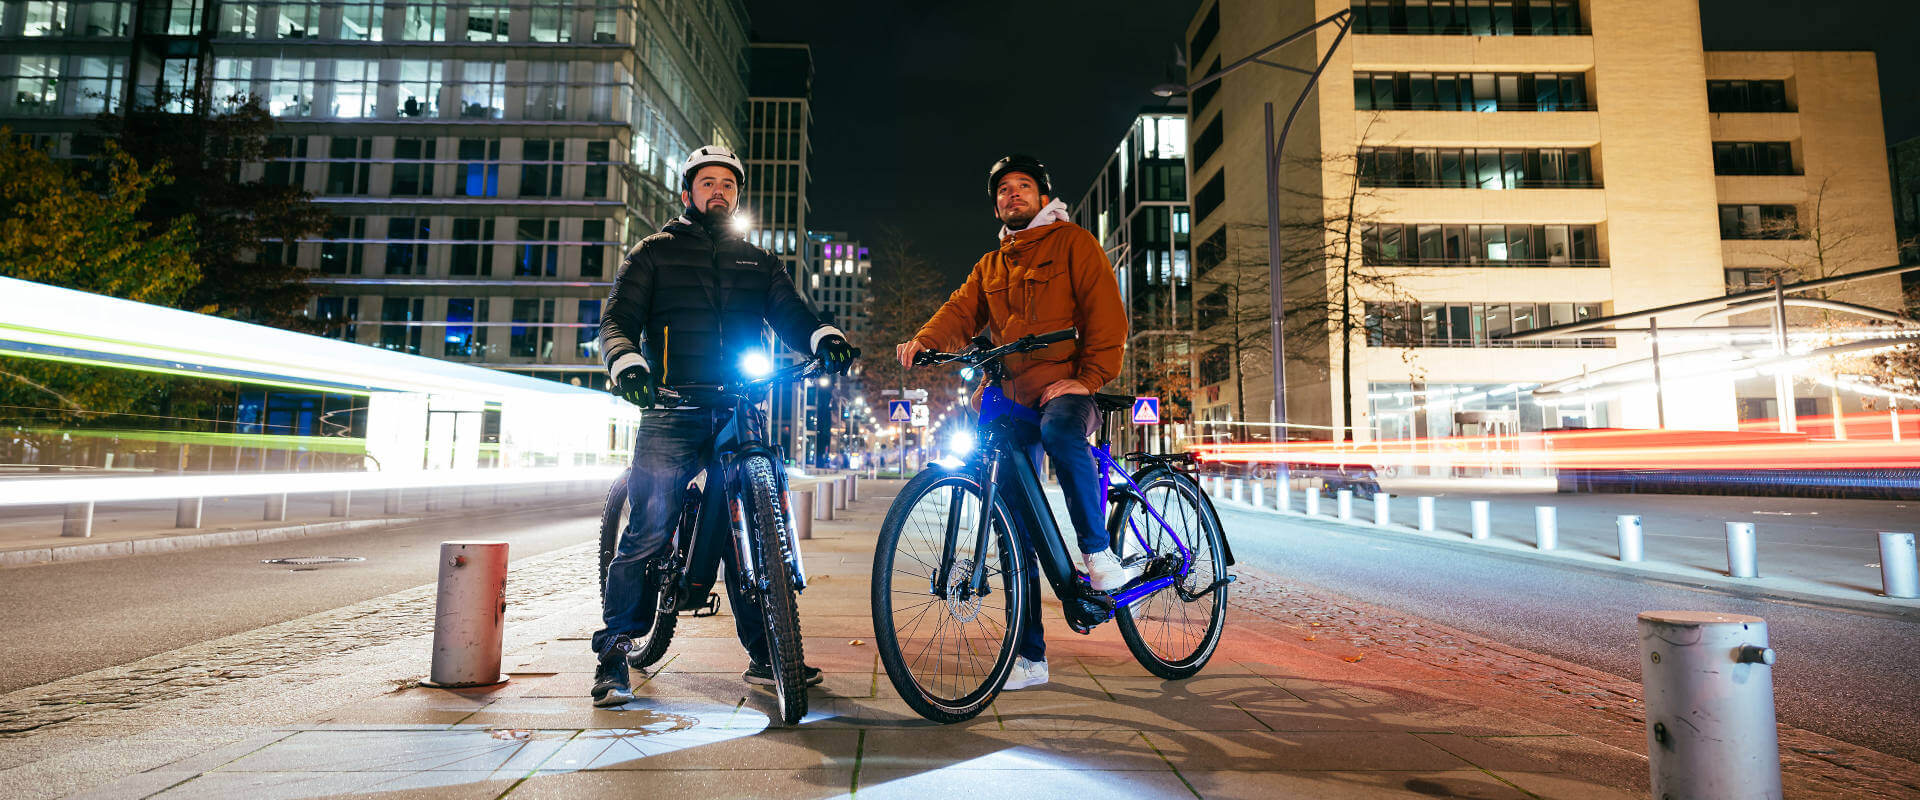 Siente la emoción de montar en bici por la noche por la ciudad